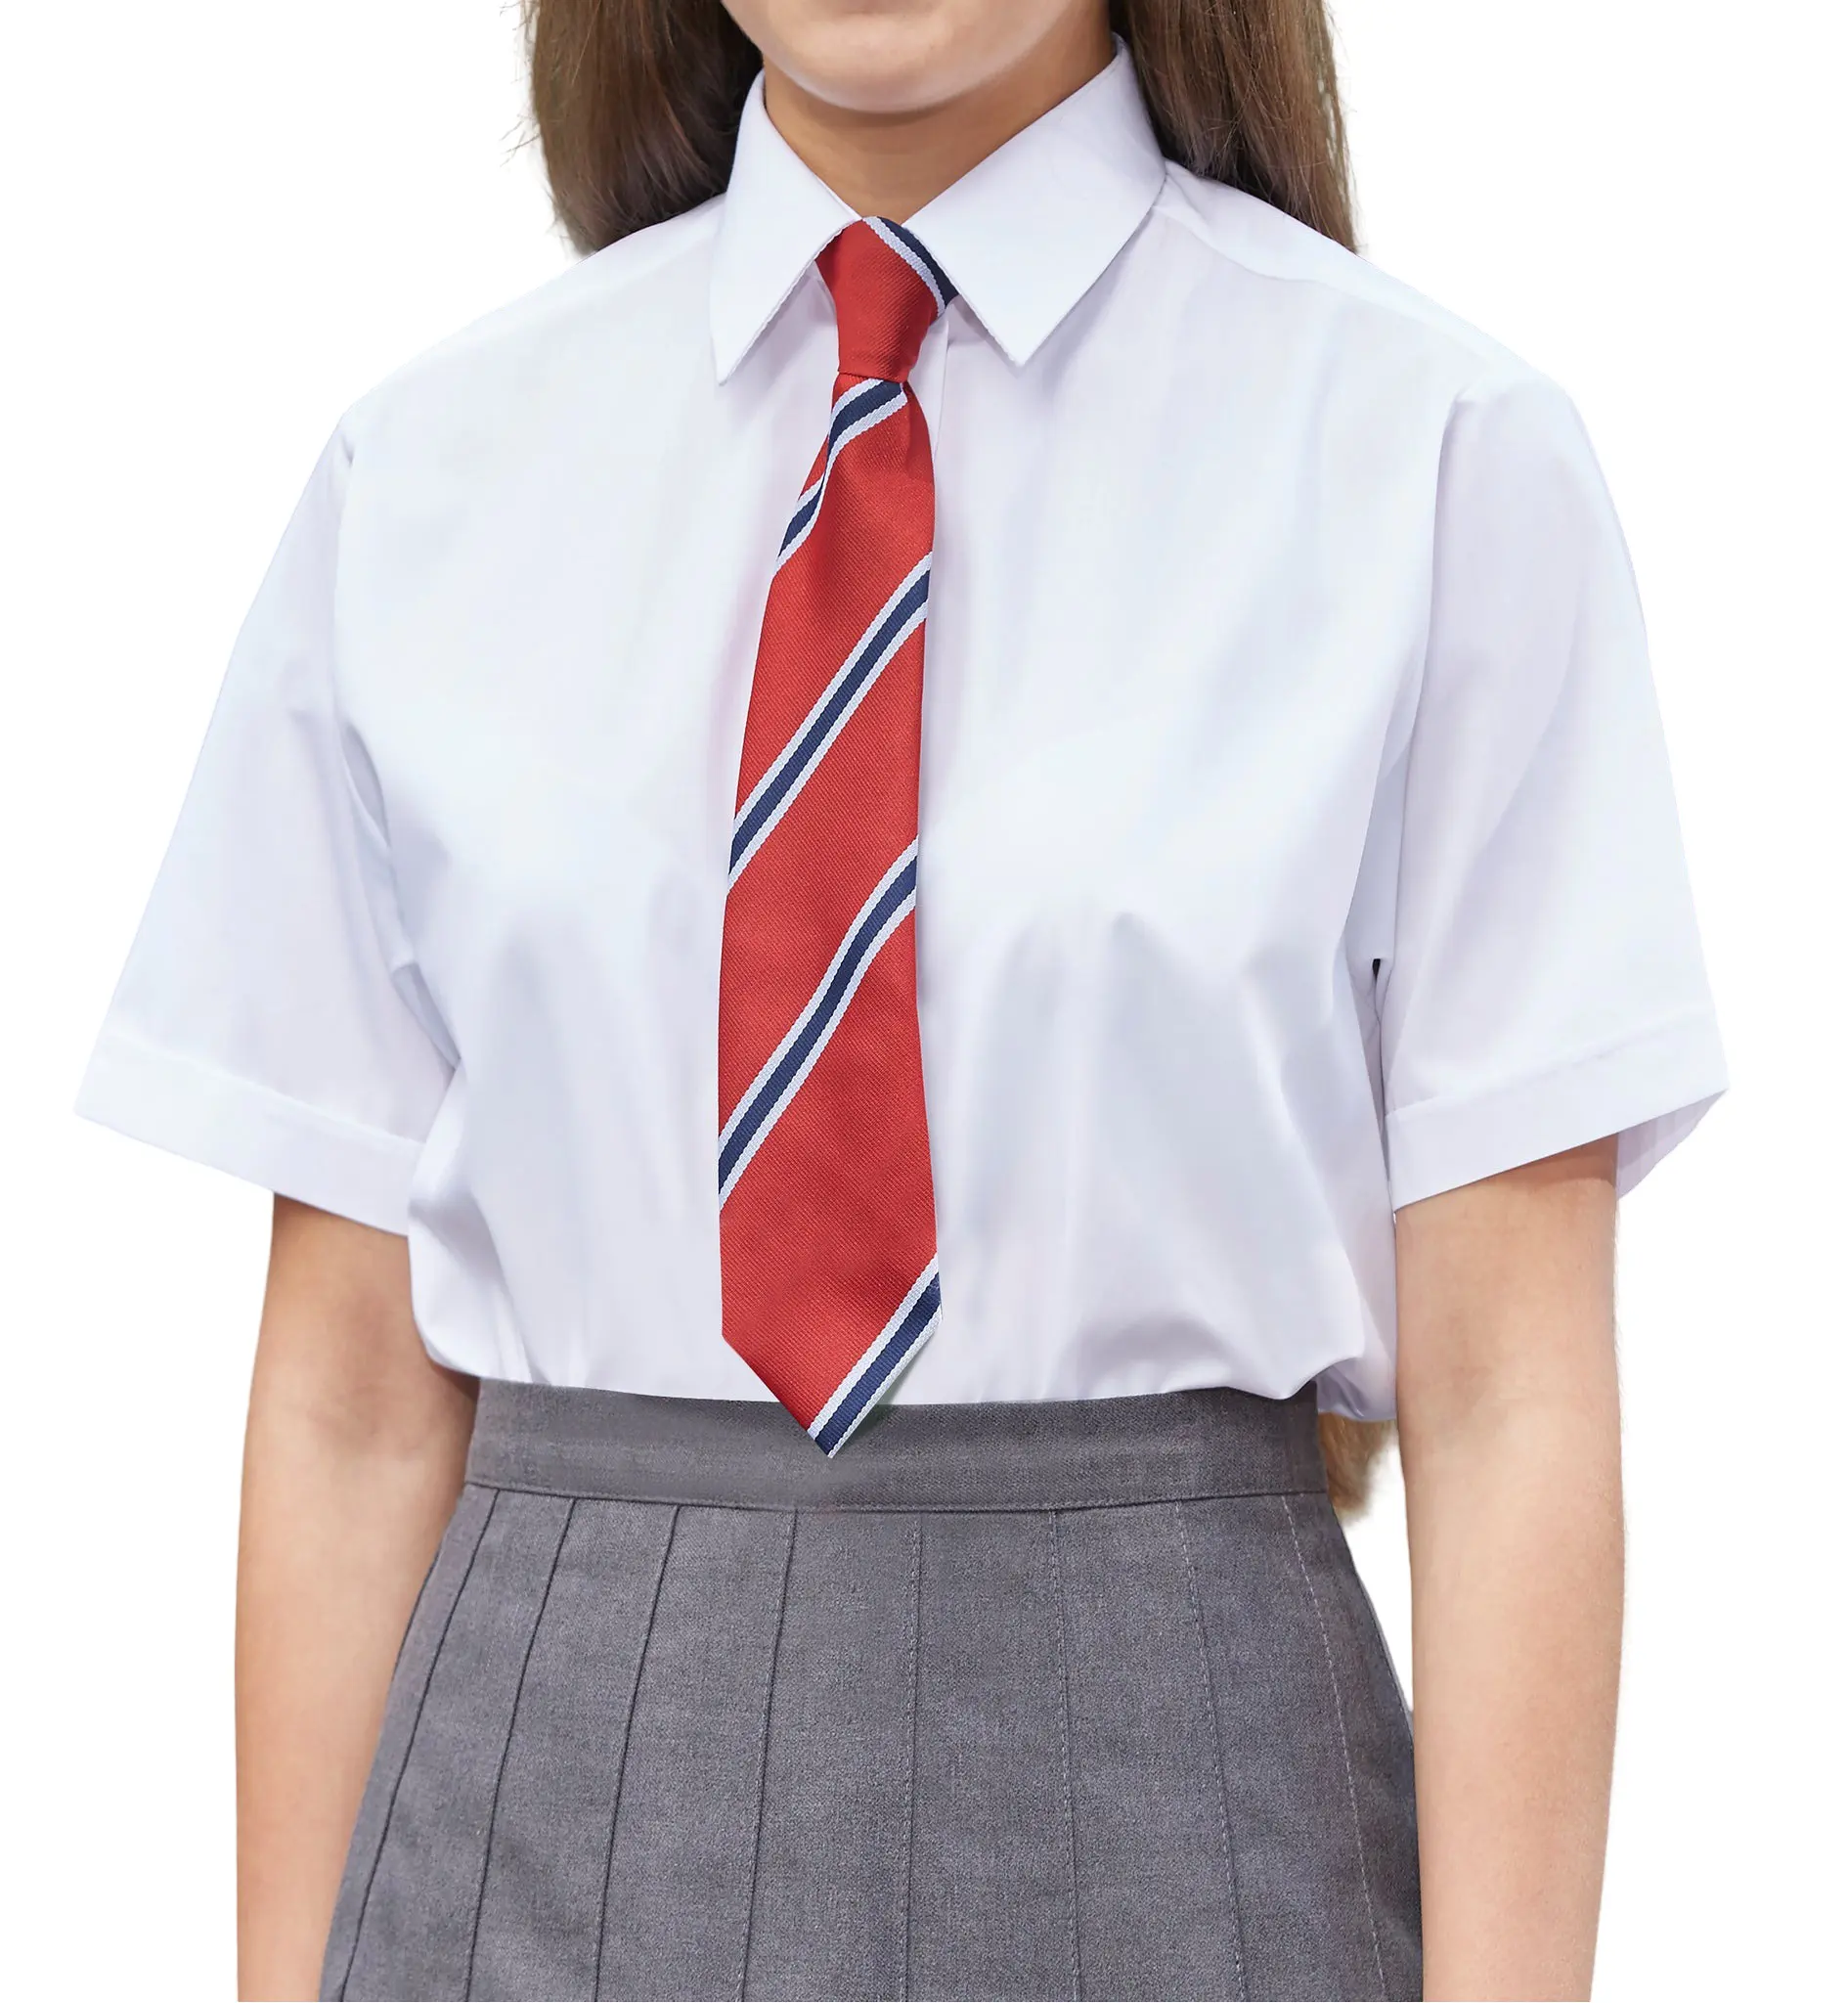 Camisa uniforme escolar de meia manga para meninas em todos os tamanhos e cores